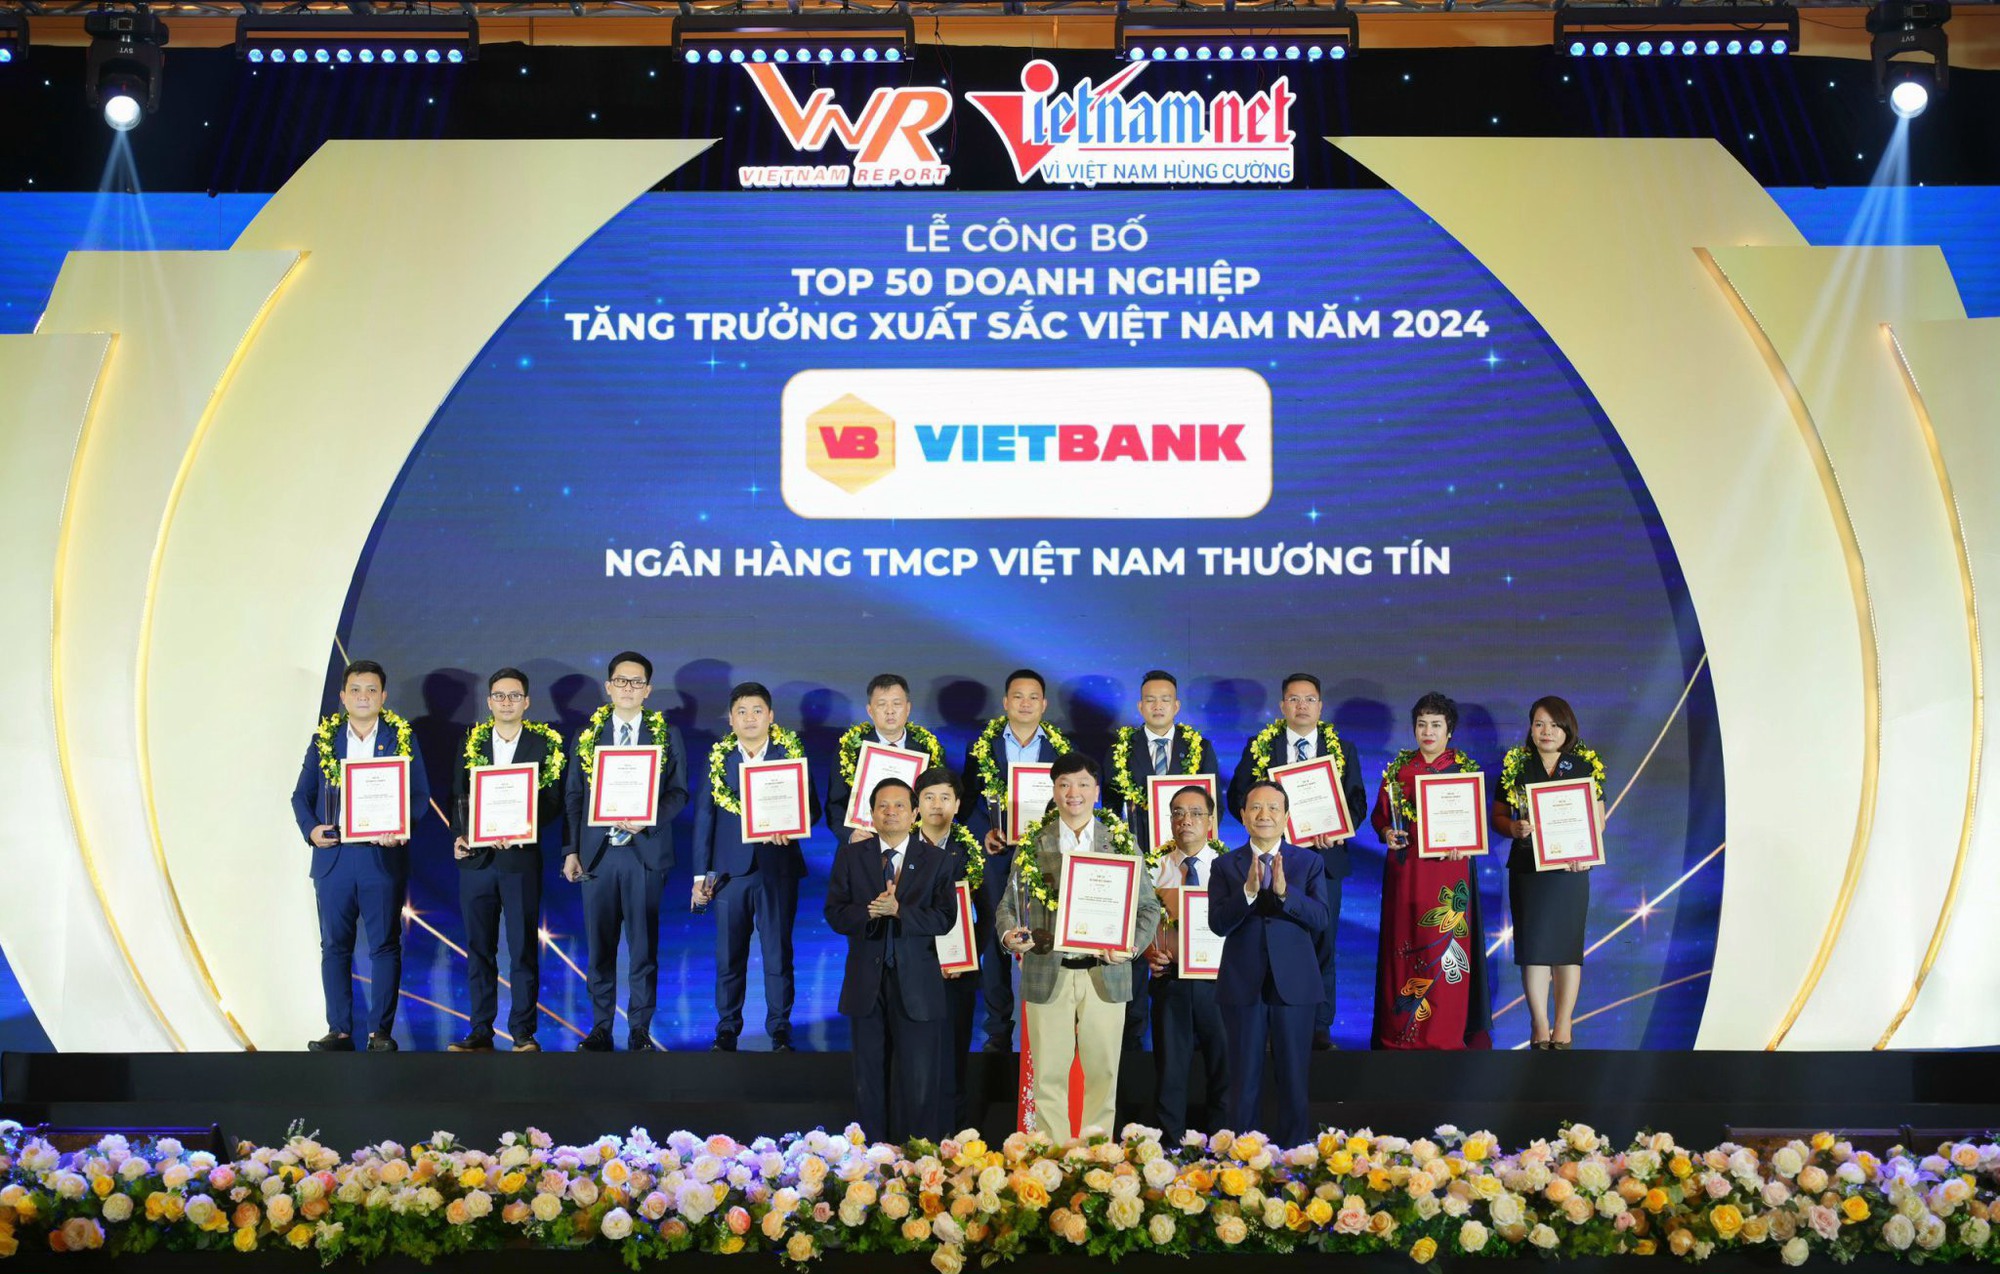 Ông Nguyễn Tiến Sỹ, đại diện Vietbank nhận giải thưởng top 50 doanh nghiệp tăng trưởng xuất sắc Việt Nam năm 2024